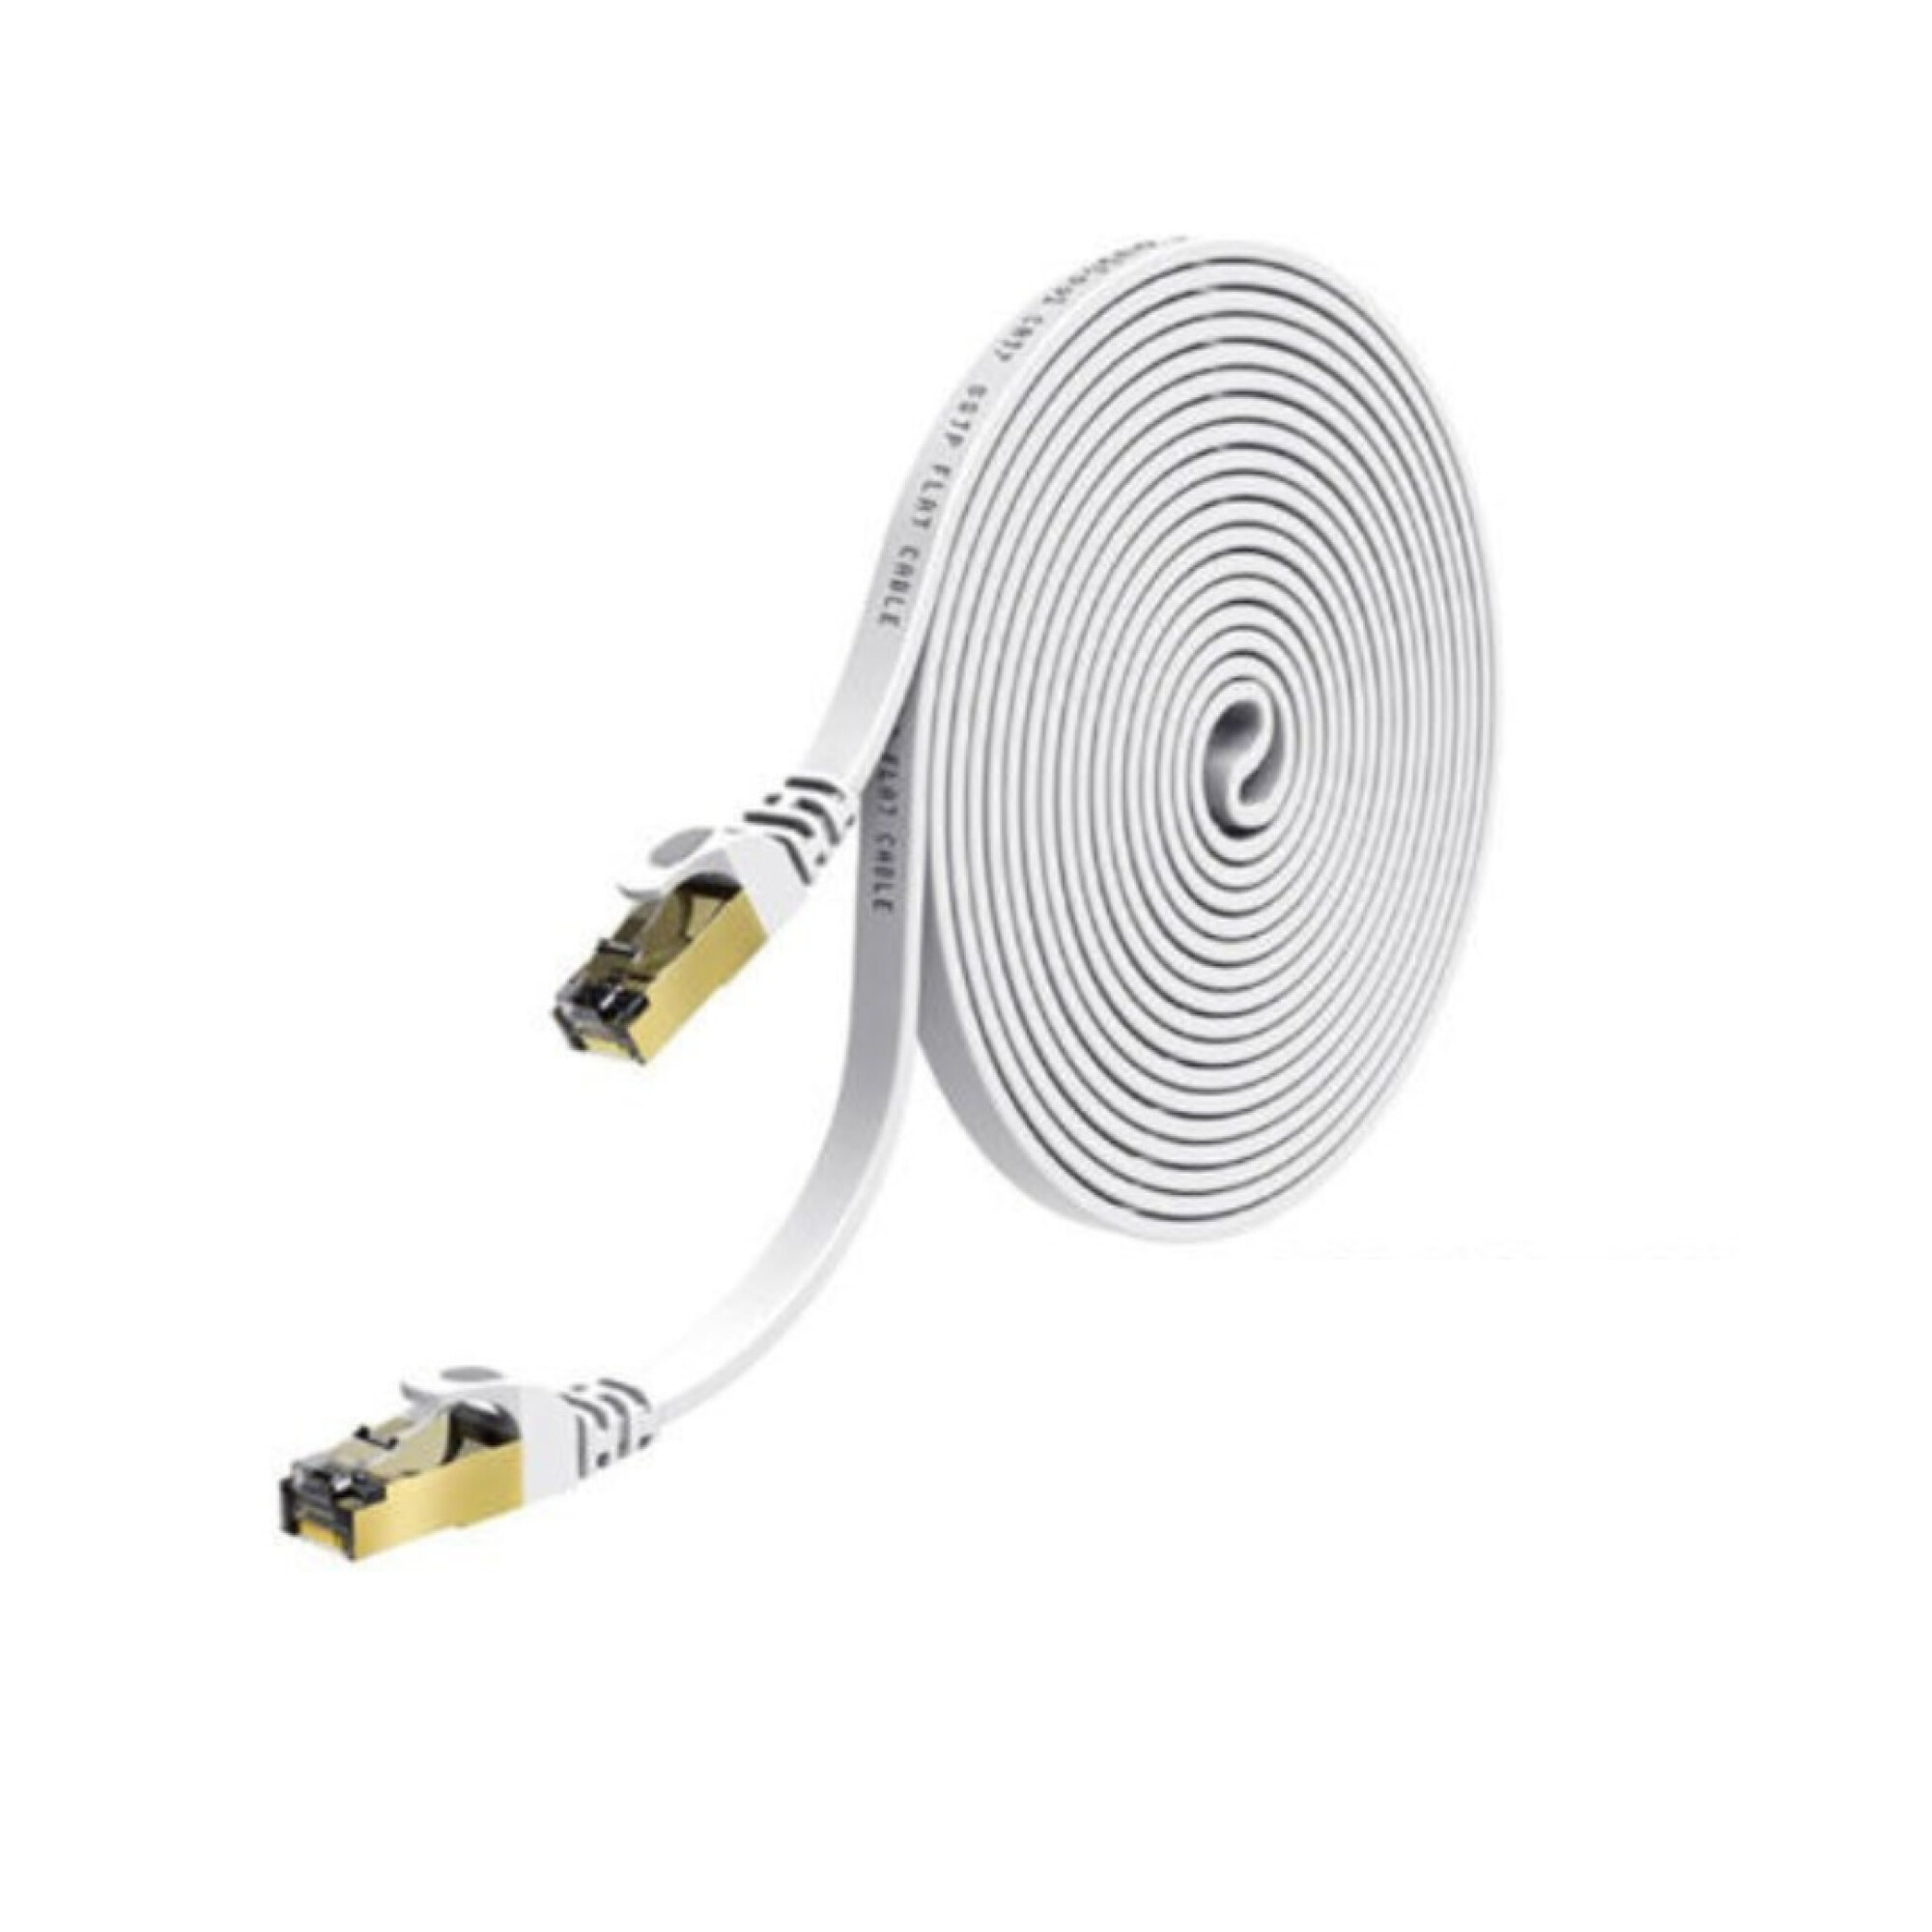 Cable Ethernet Cat 7 de 10 pies, cable de Internet largo plano resistente,  cable de red LAN Cat7 blindado, cables de conexión Gigabit de alta  velocidad con conector RJ45 para juegos PS4